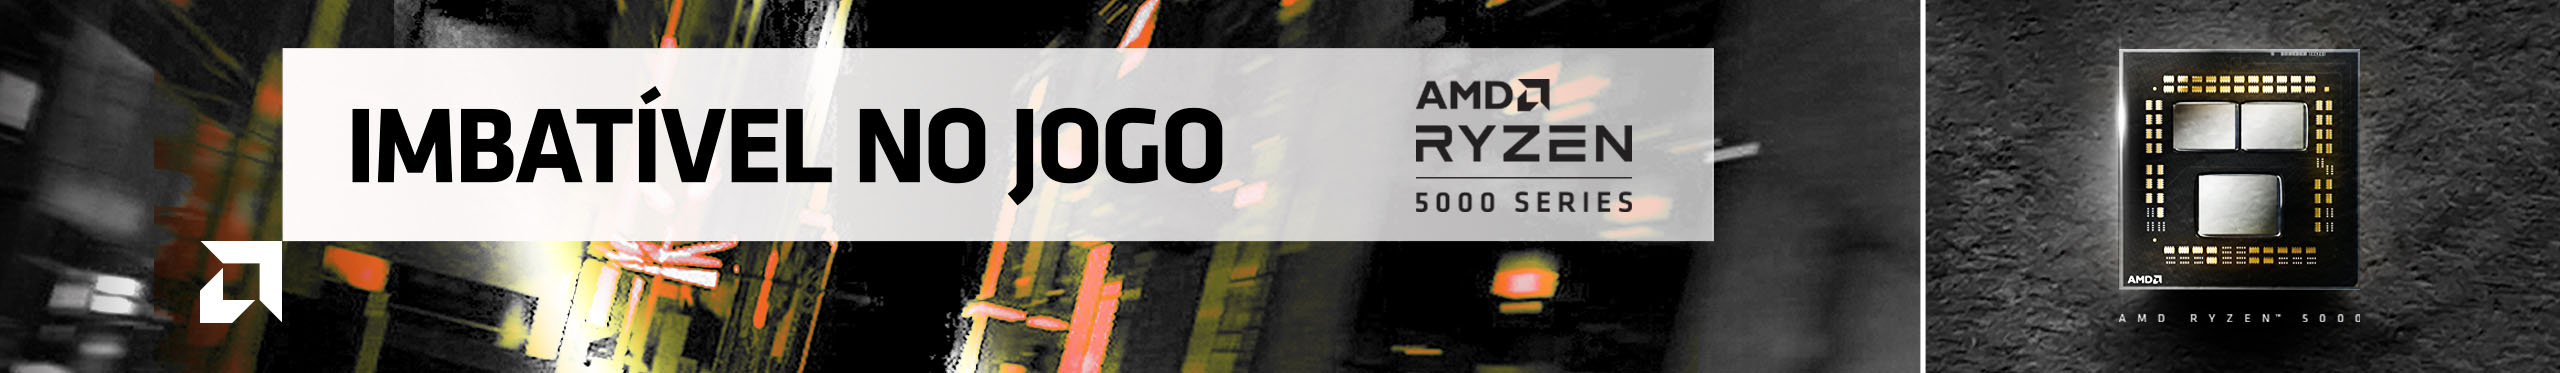 Os processadores AMD Ryzen Série 5000 são imbatíveis no jogo e ponto final!